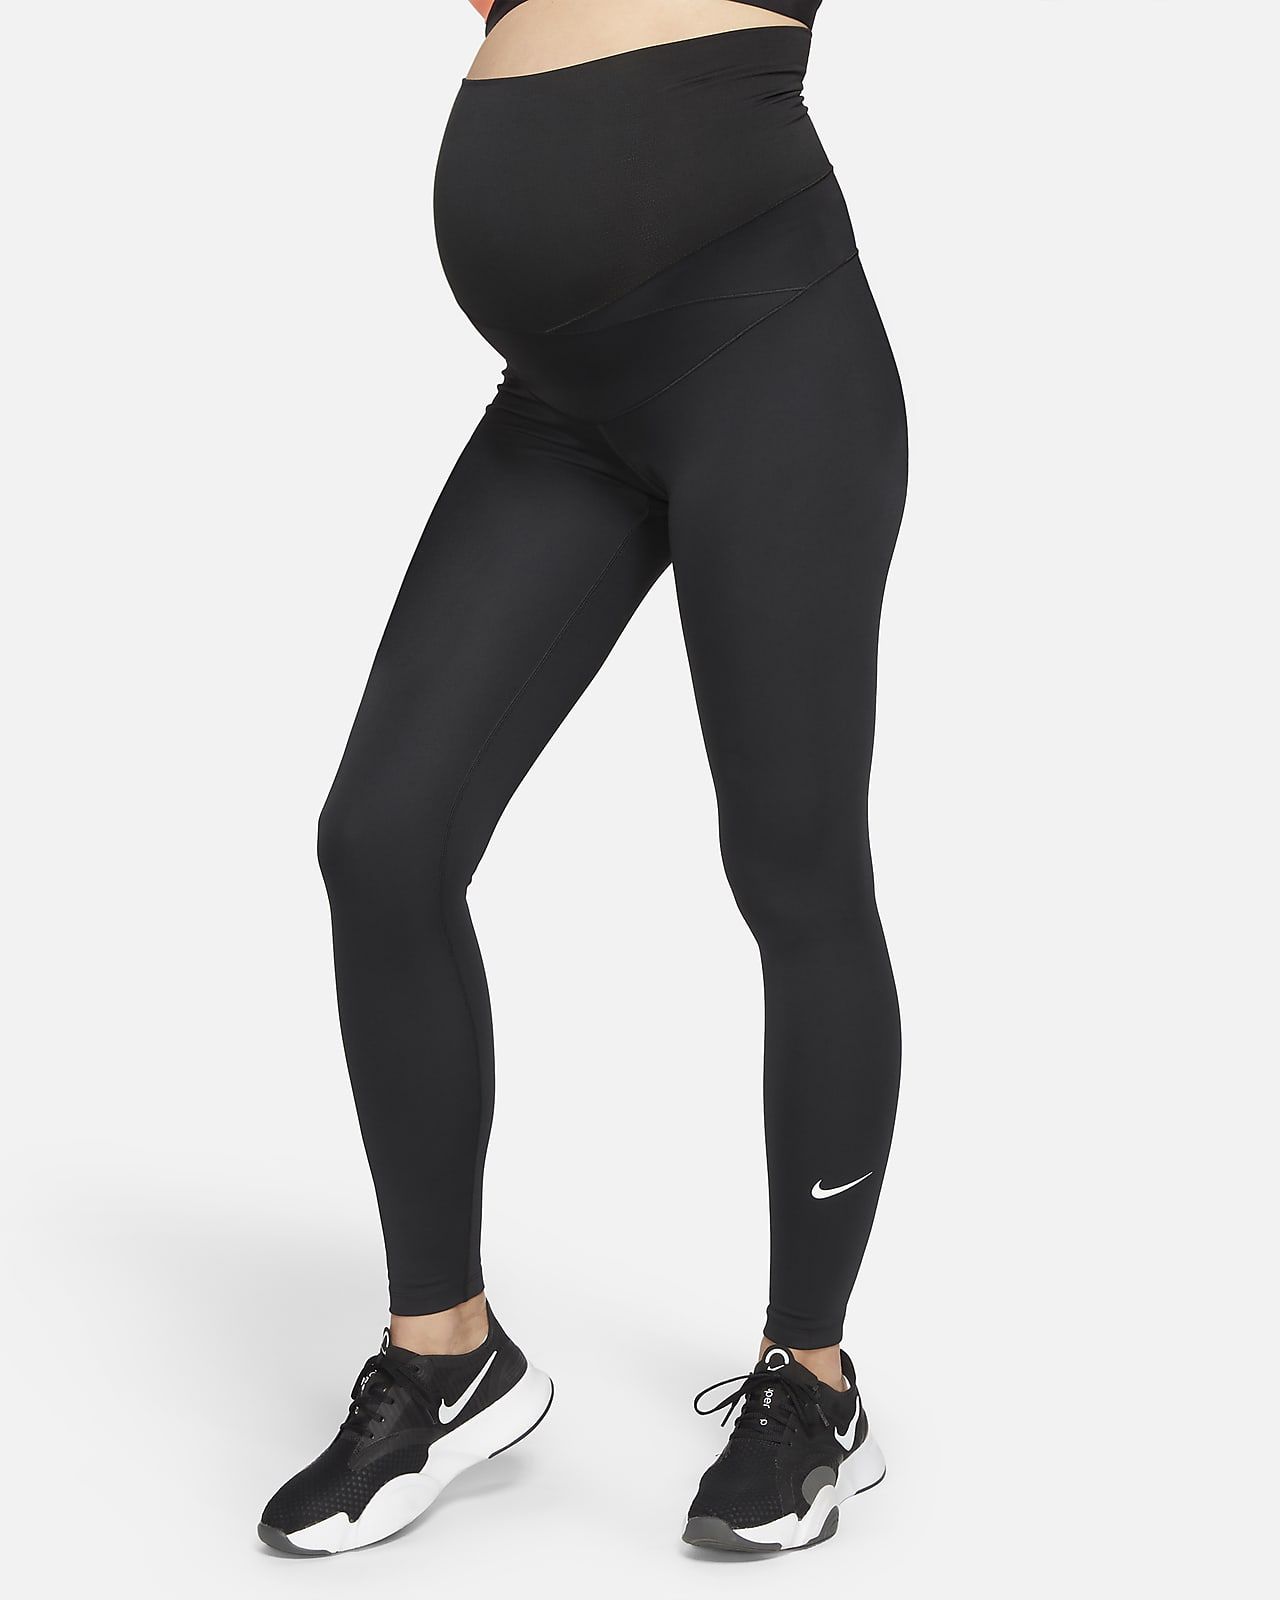 Women's High-Waisted Leggings (Maternity) | Nike (UK)